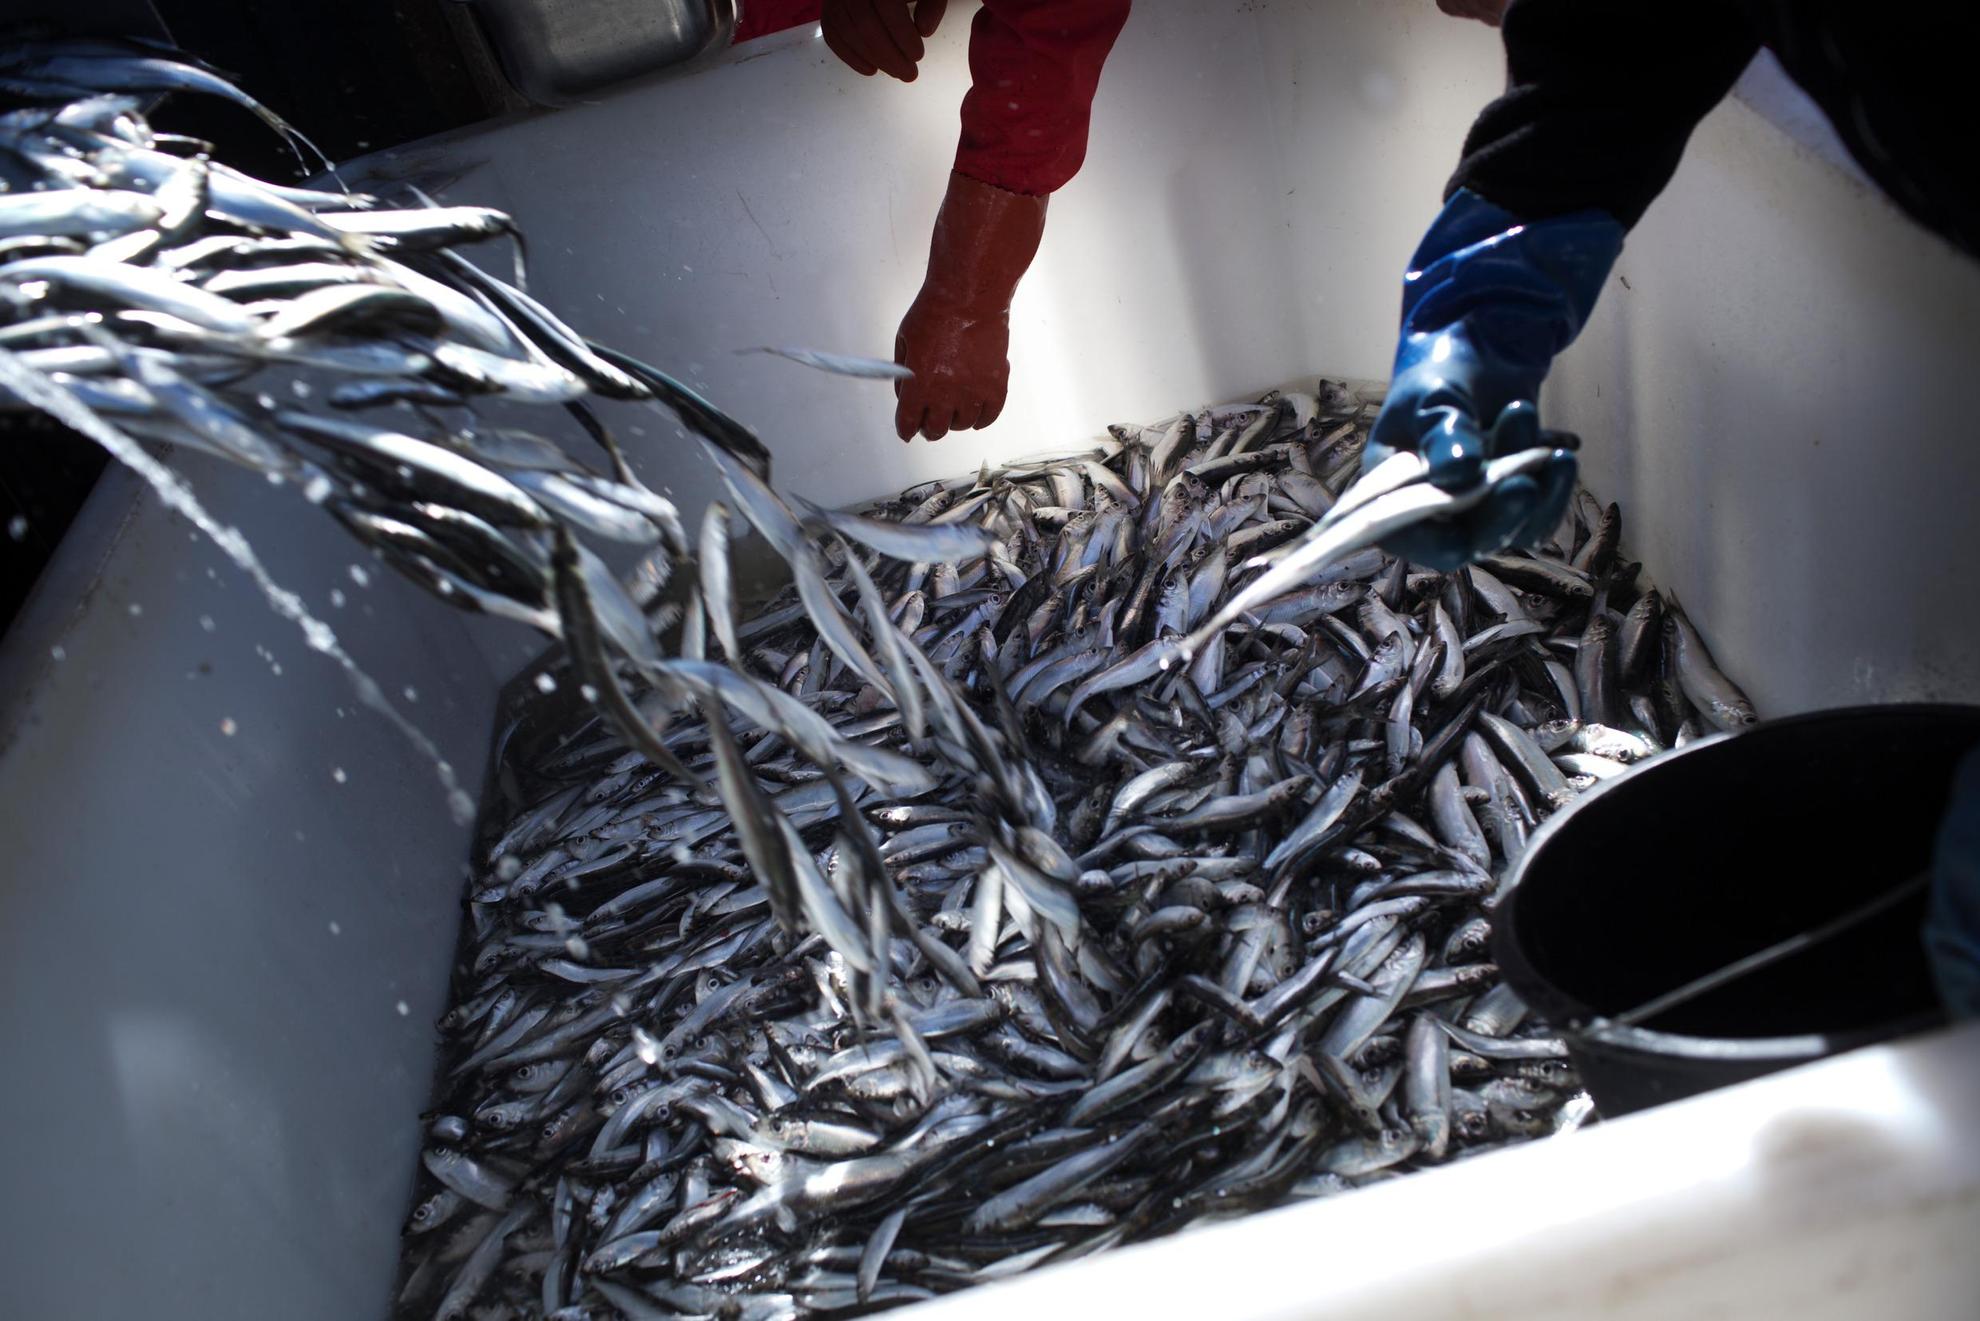 Des centaines de harengs sont placés dans un bac en plastique blanc. Deux mains dans des gants en caoutchouc retirent chaque poisson.